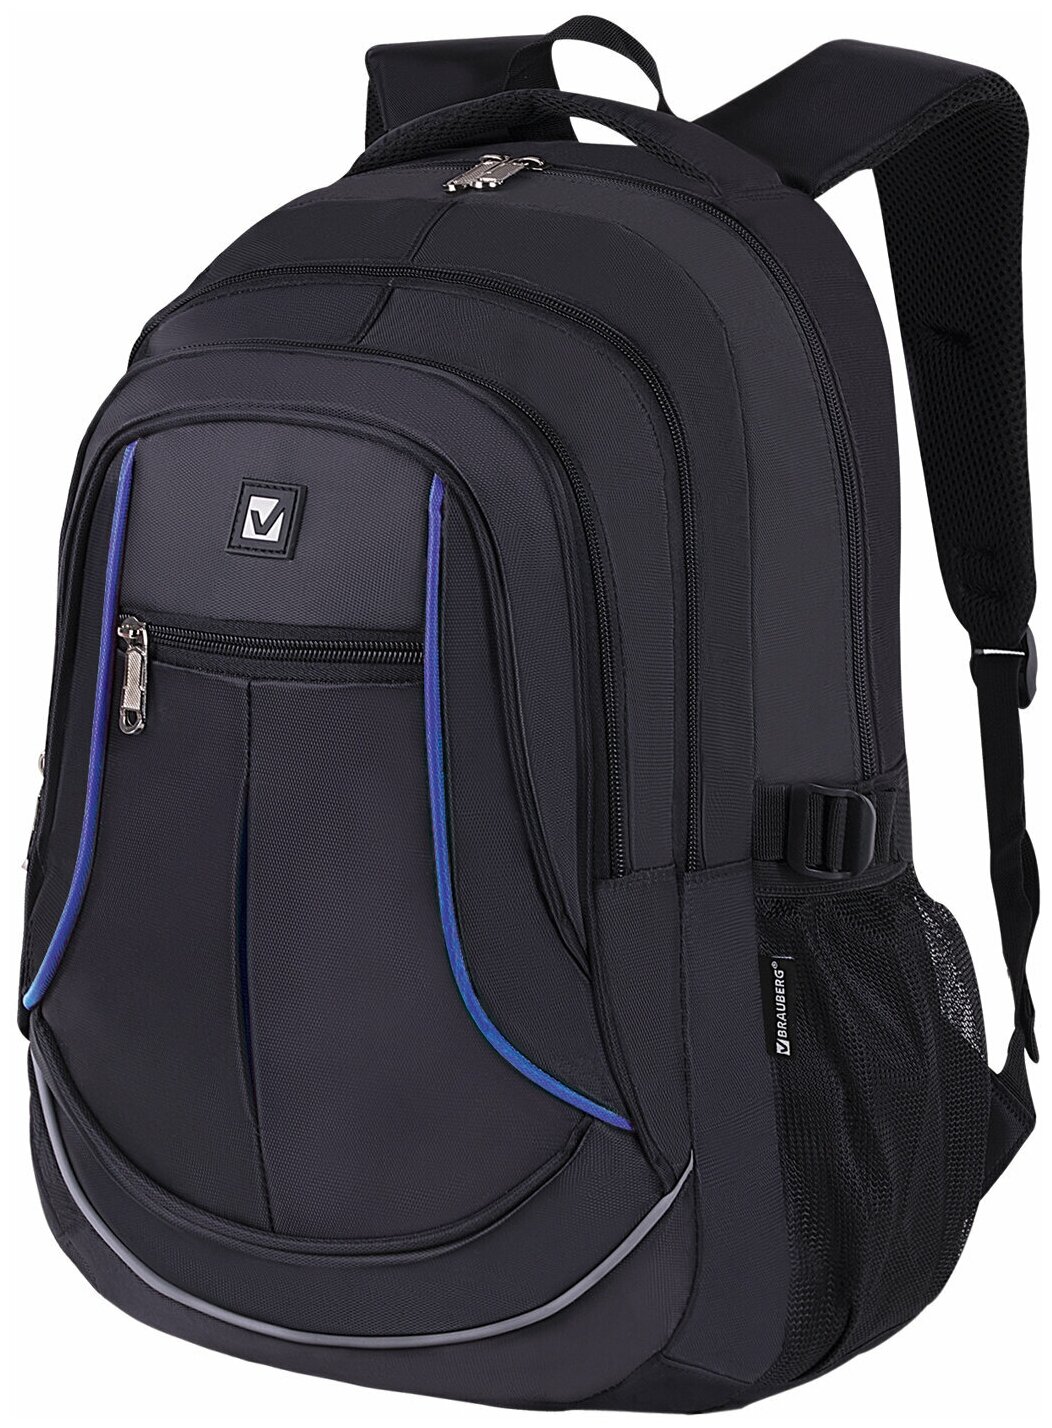 Рюкзак BRAUBERG HIGH SCHOOL универсальный 3 отделения черный синие детали 46х31х18 см 271652